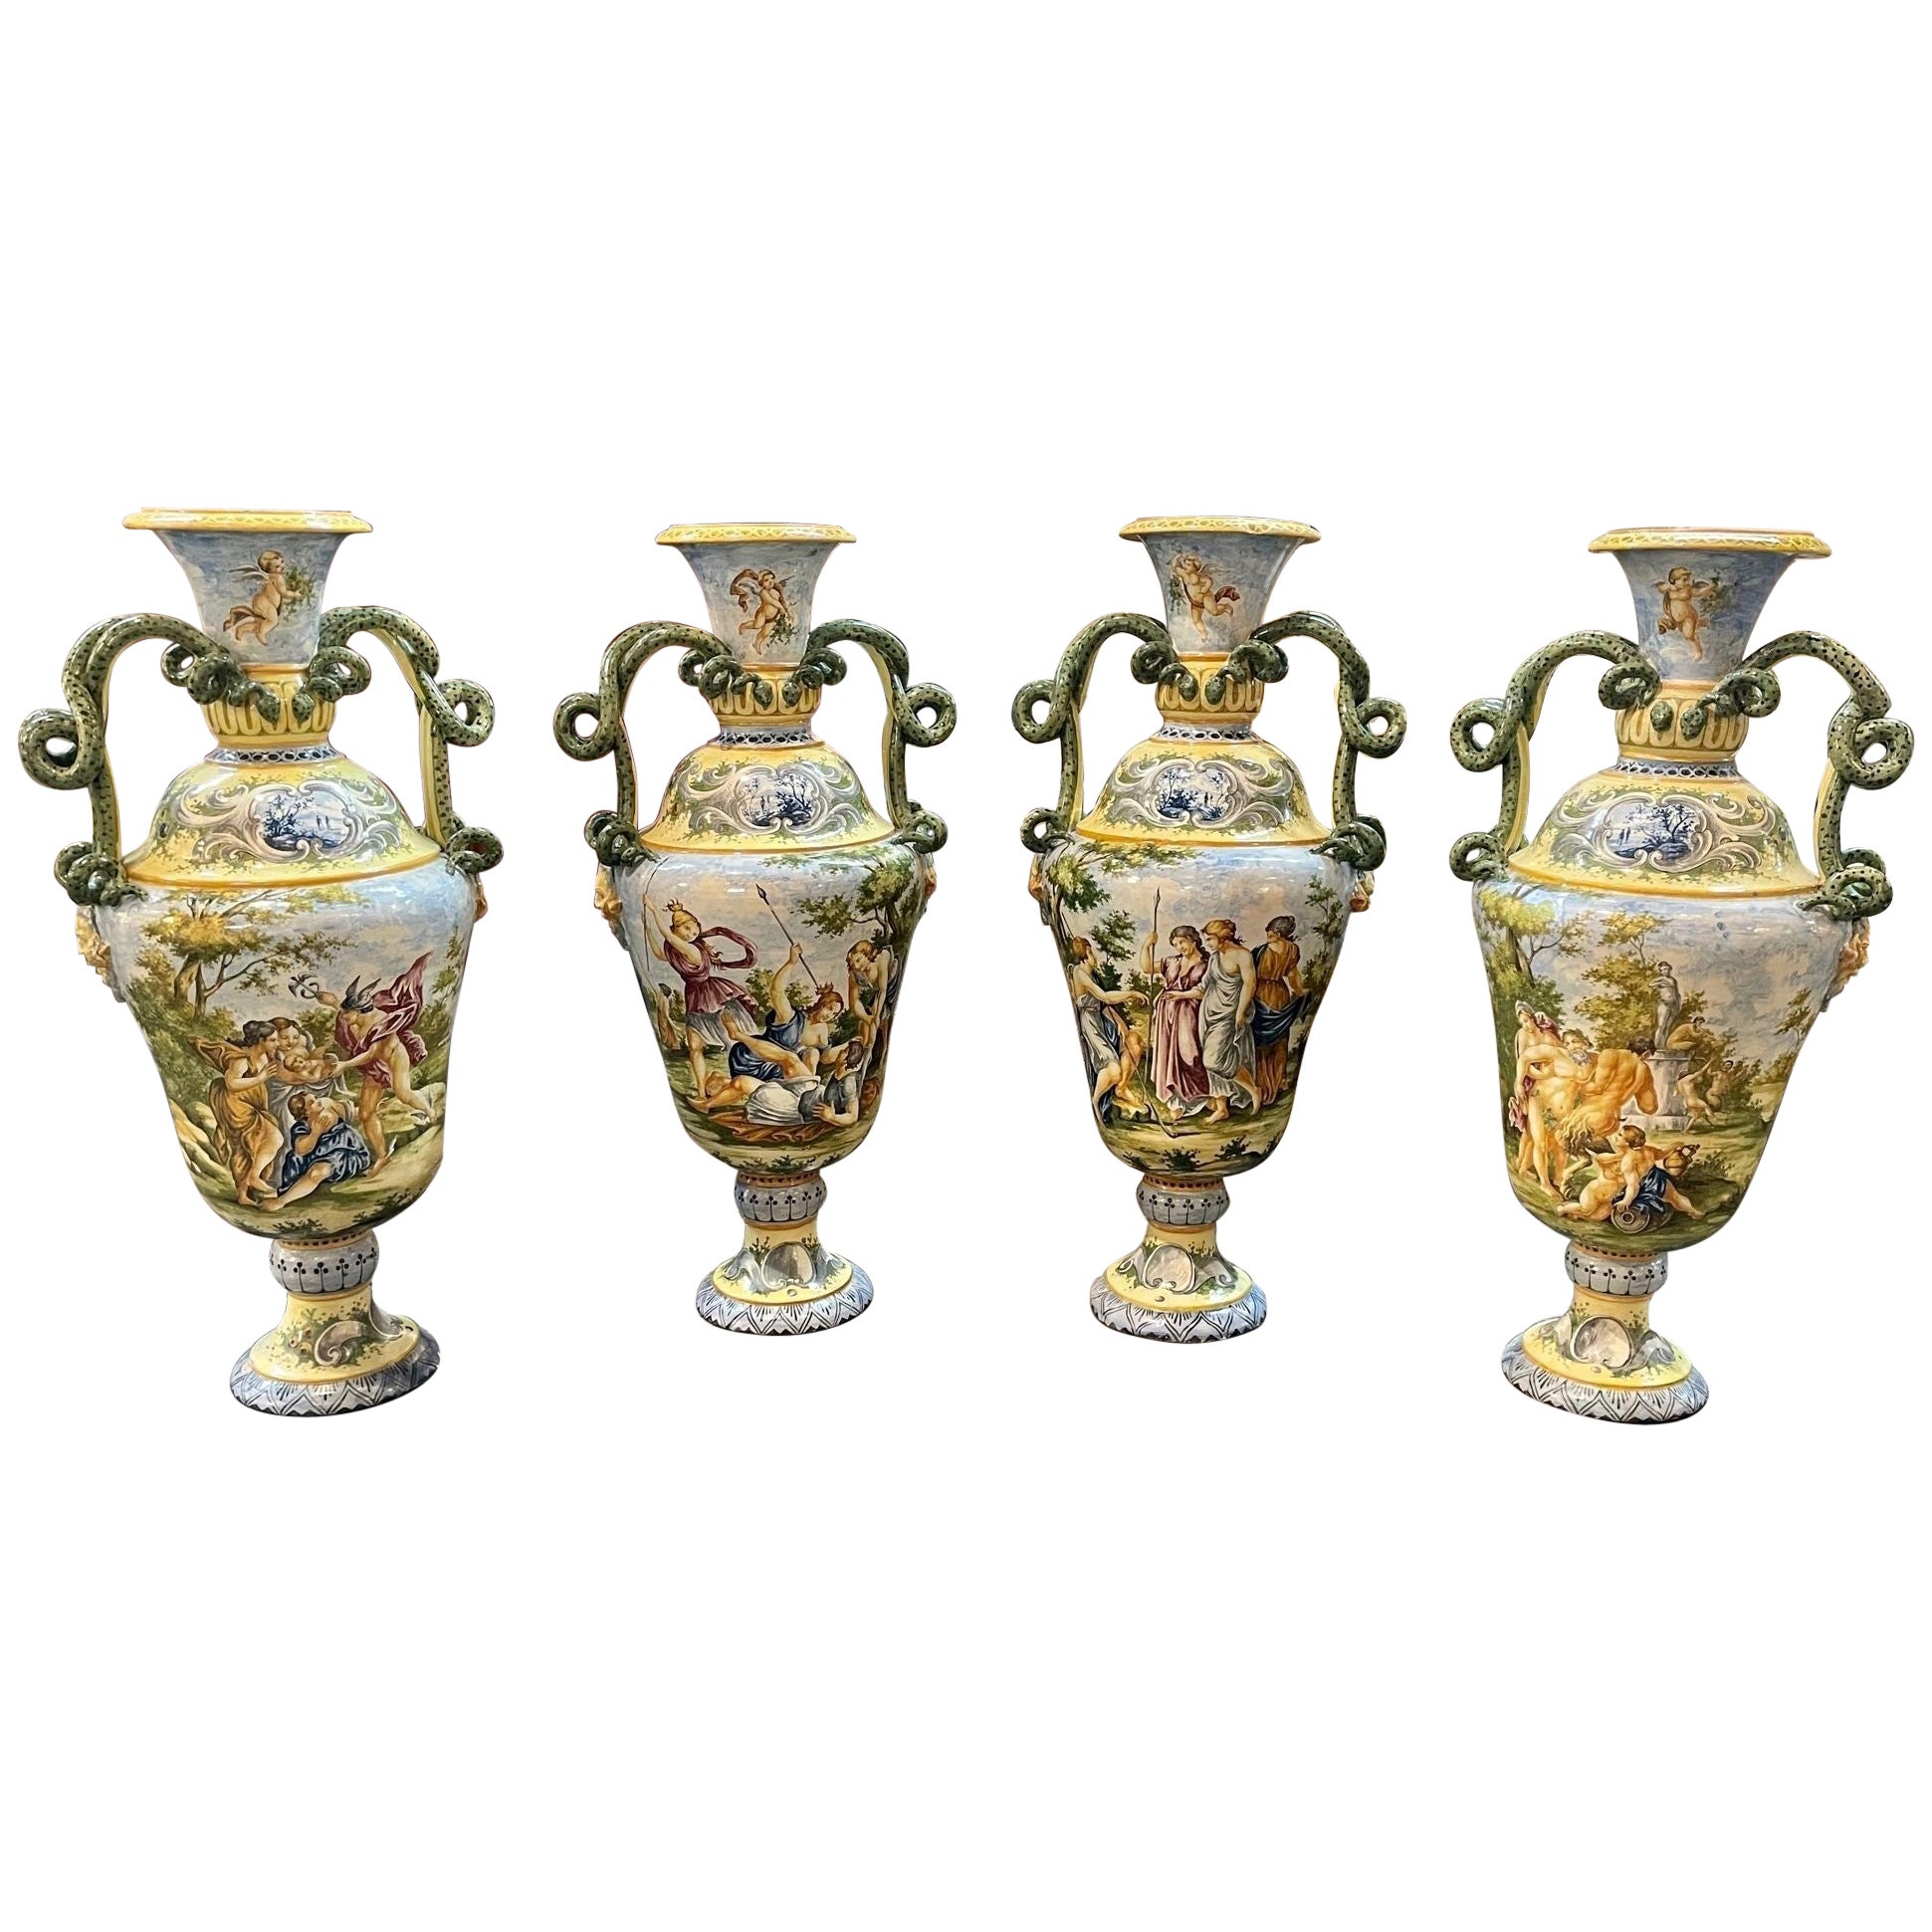 Vasi italiani, Liguria/Genova, metà del XIX secolo in vendita su 1stDibs